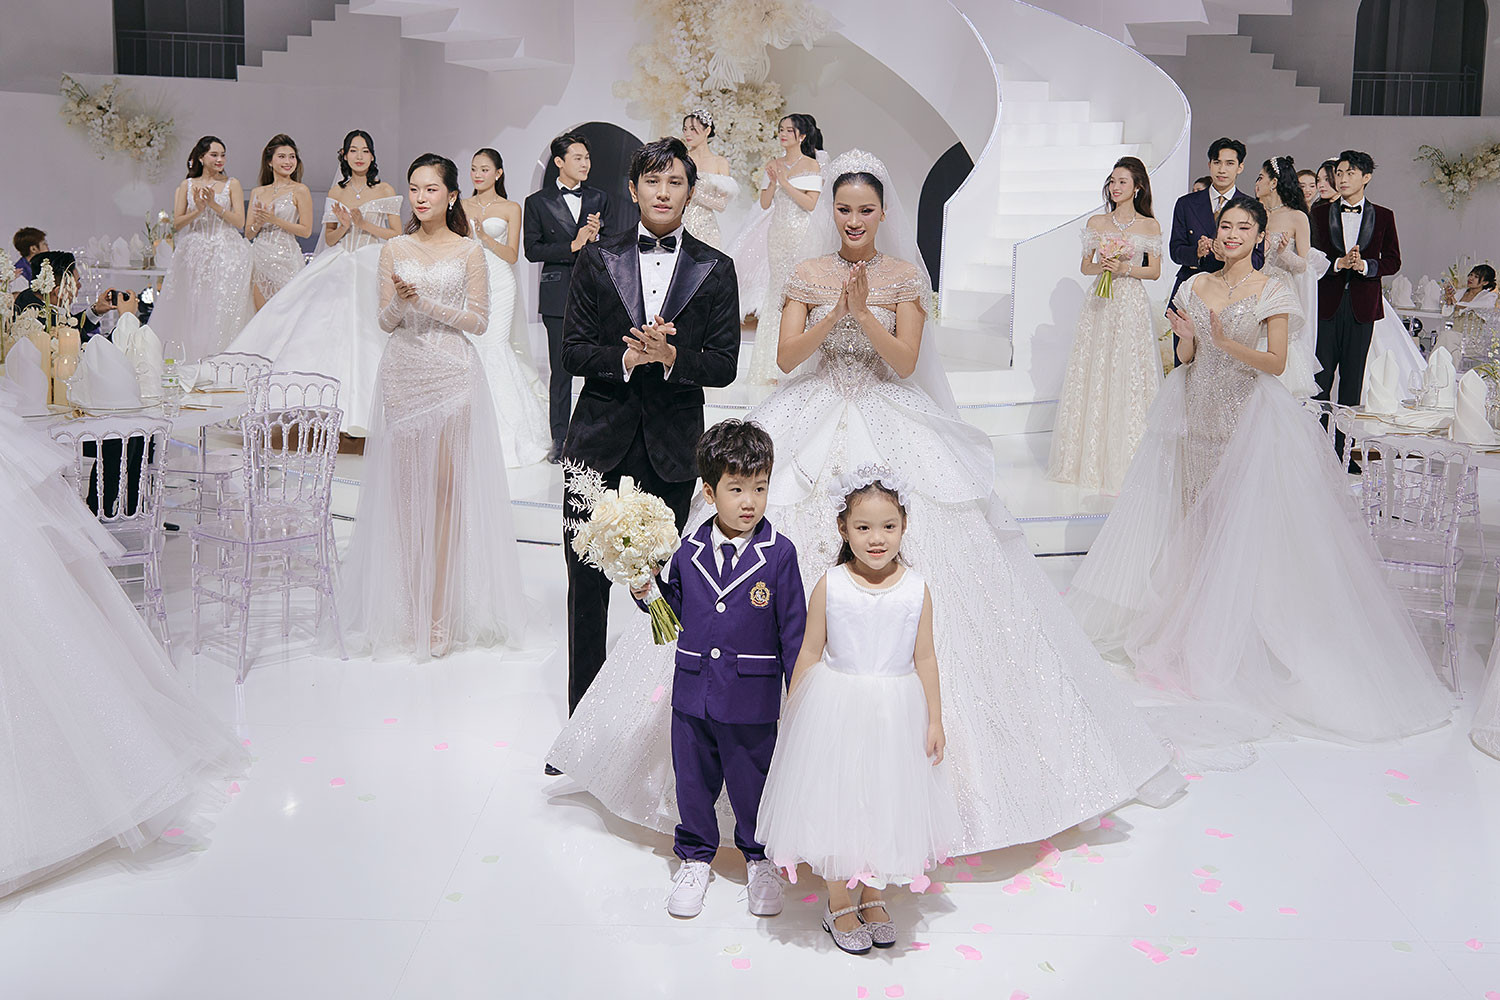 Á hậu Hương Ly tổ chức đám cưới tại sàn diễn thời trang - ảnh 10